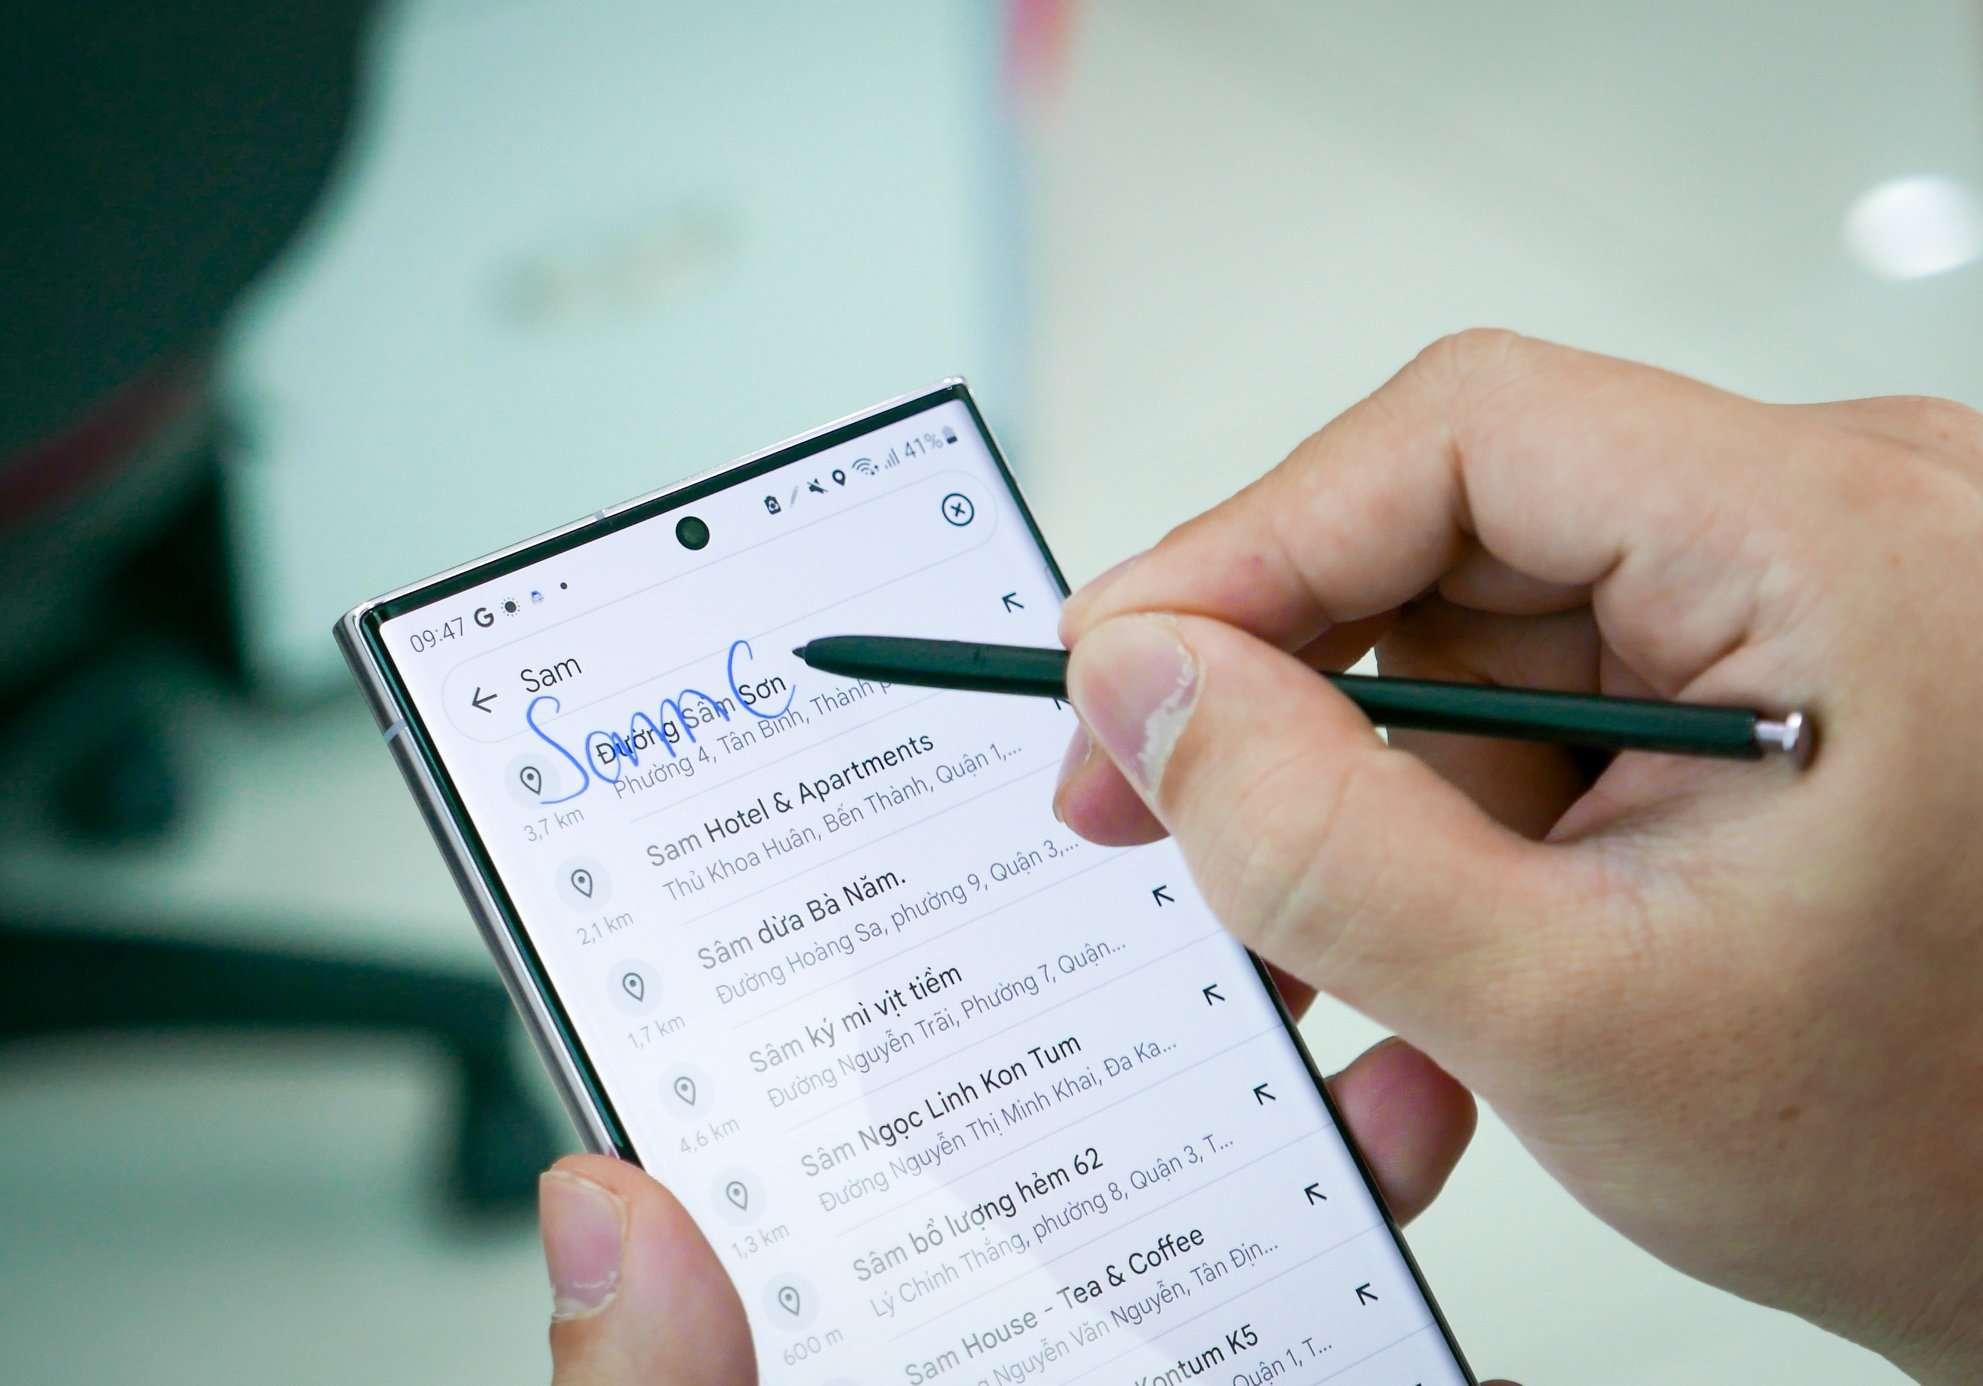 Đột phá công nghệ, nâng tầm hiệu suất - Flagship mới của Samsung giúp tín đồ Galaxy Note 9 thỏa sức làm việc linh hoạt - Ảnh 4.